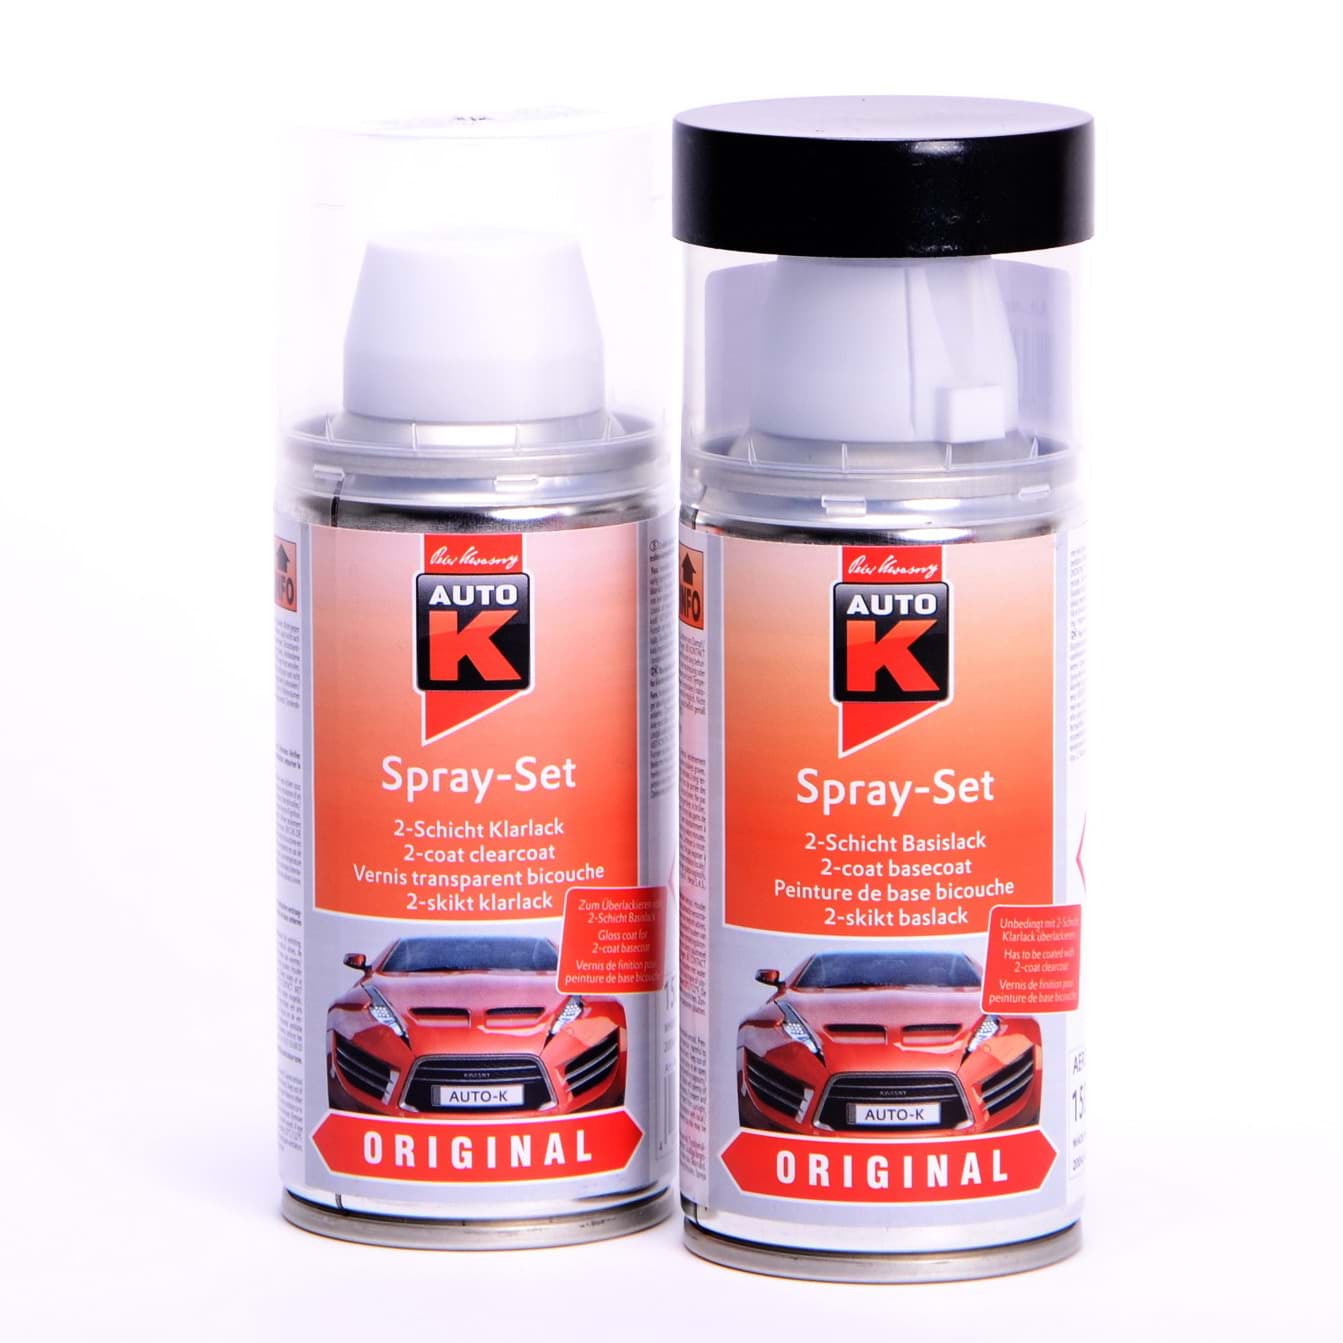 Afbeelding van Auto-K Spray-Set Autolack für Volkswagen, VW, Audi LA6P Cosmicgrün met 20855